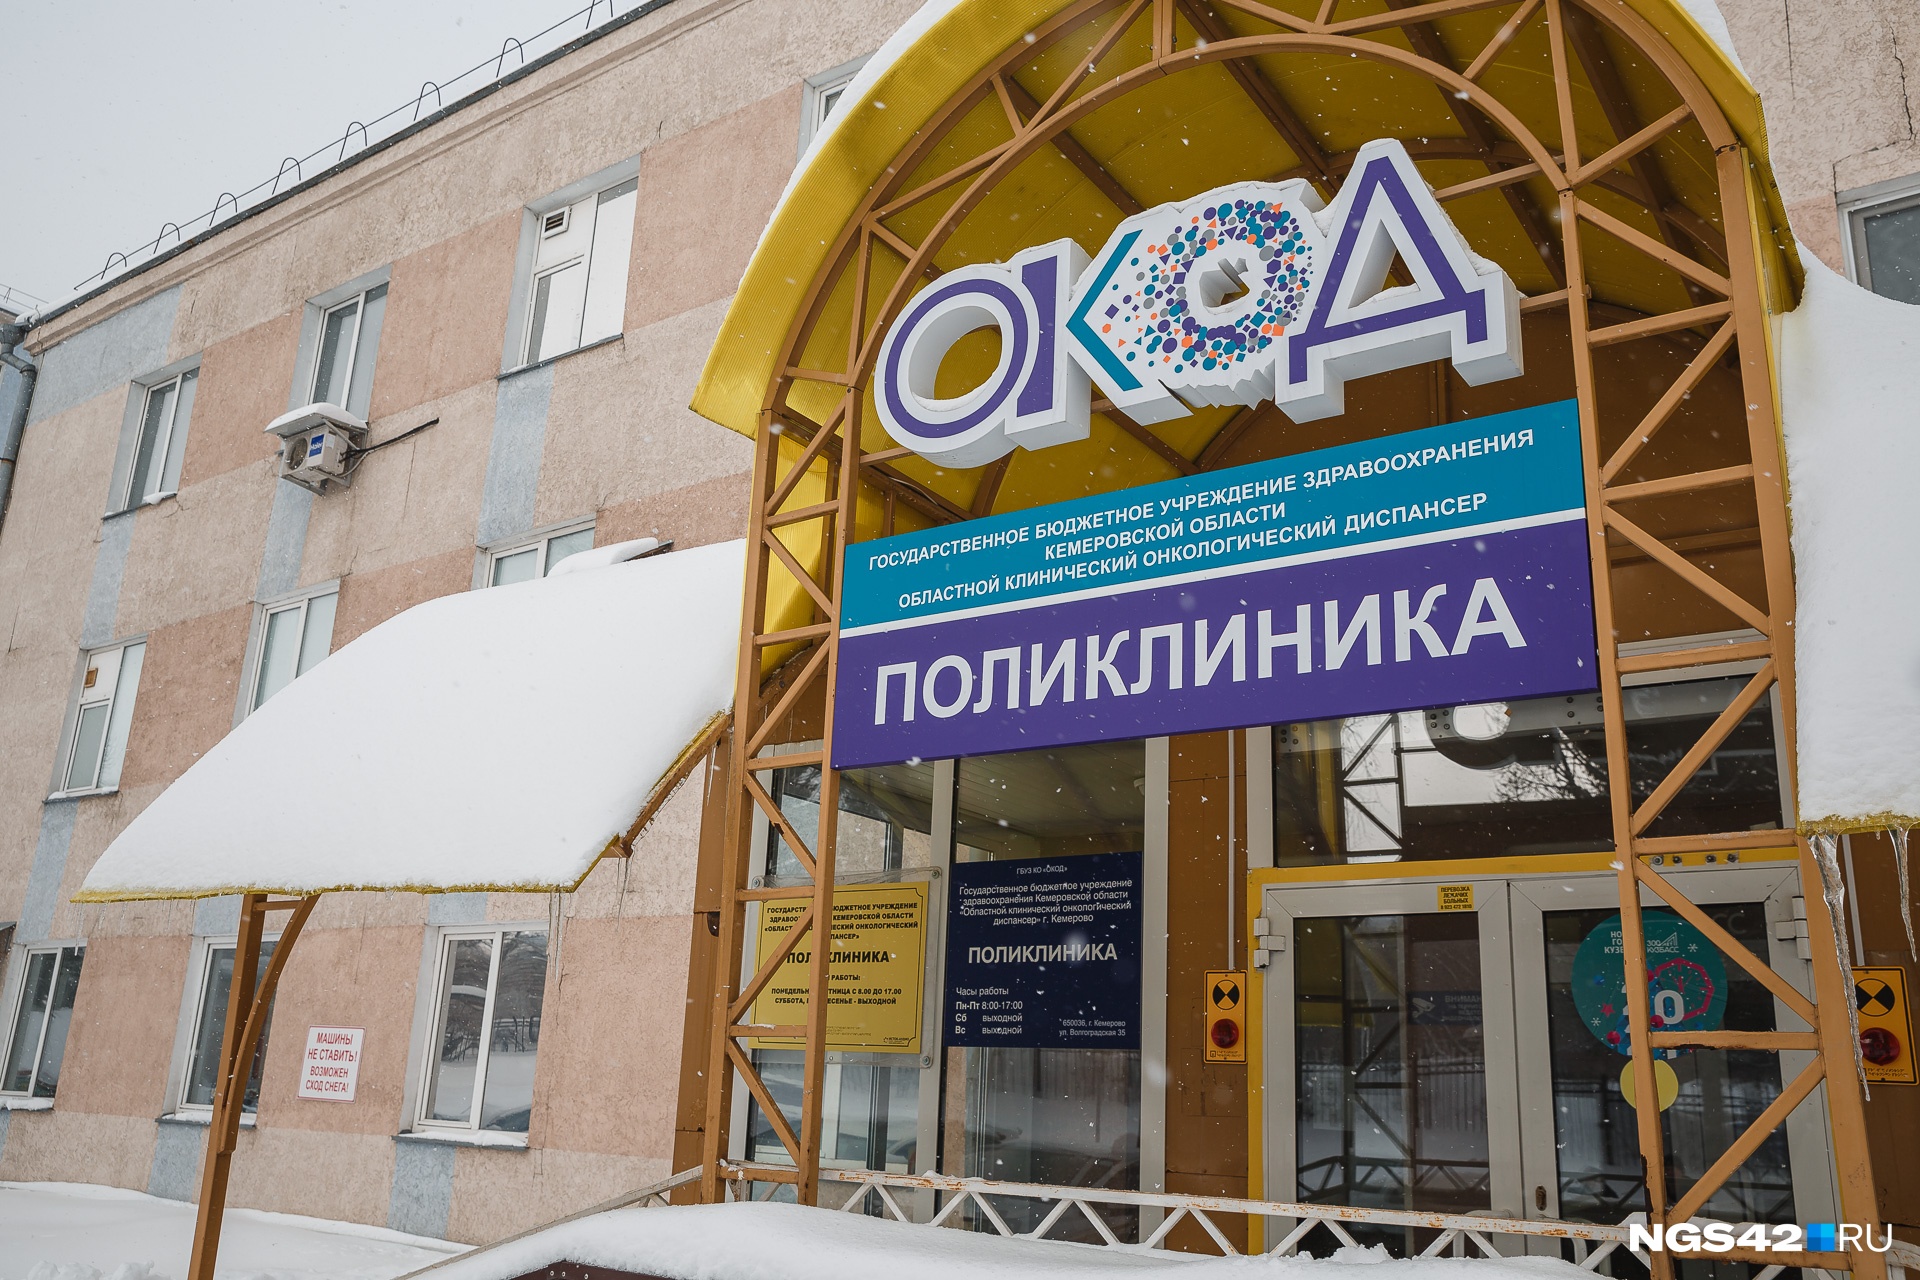 В 2019 году каждый 9-й онкопациент обращался за помощью в Томск, а не в Кемерово. Одна из причин этого — график работы поликлиники онкодиспансера